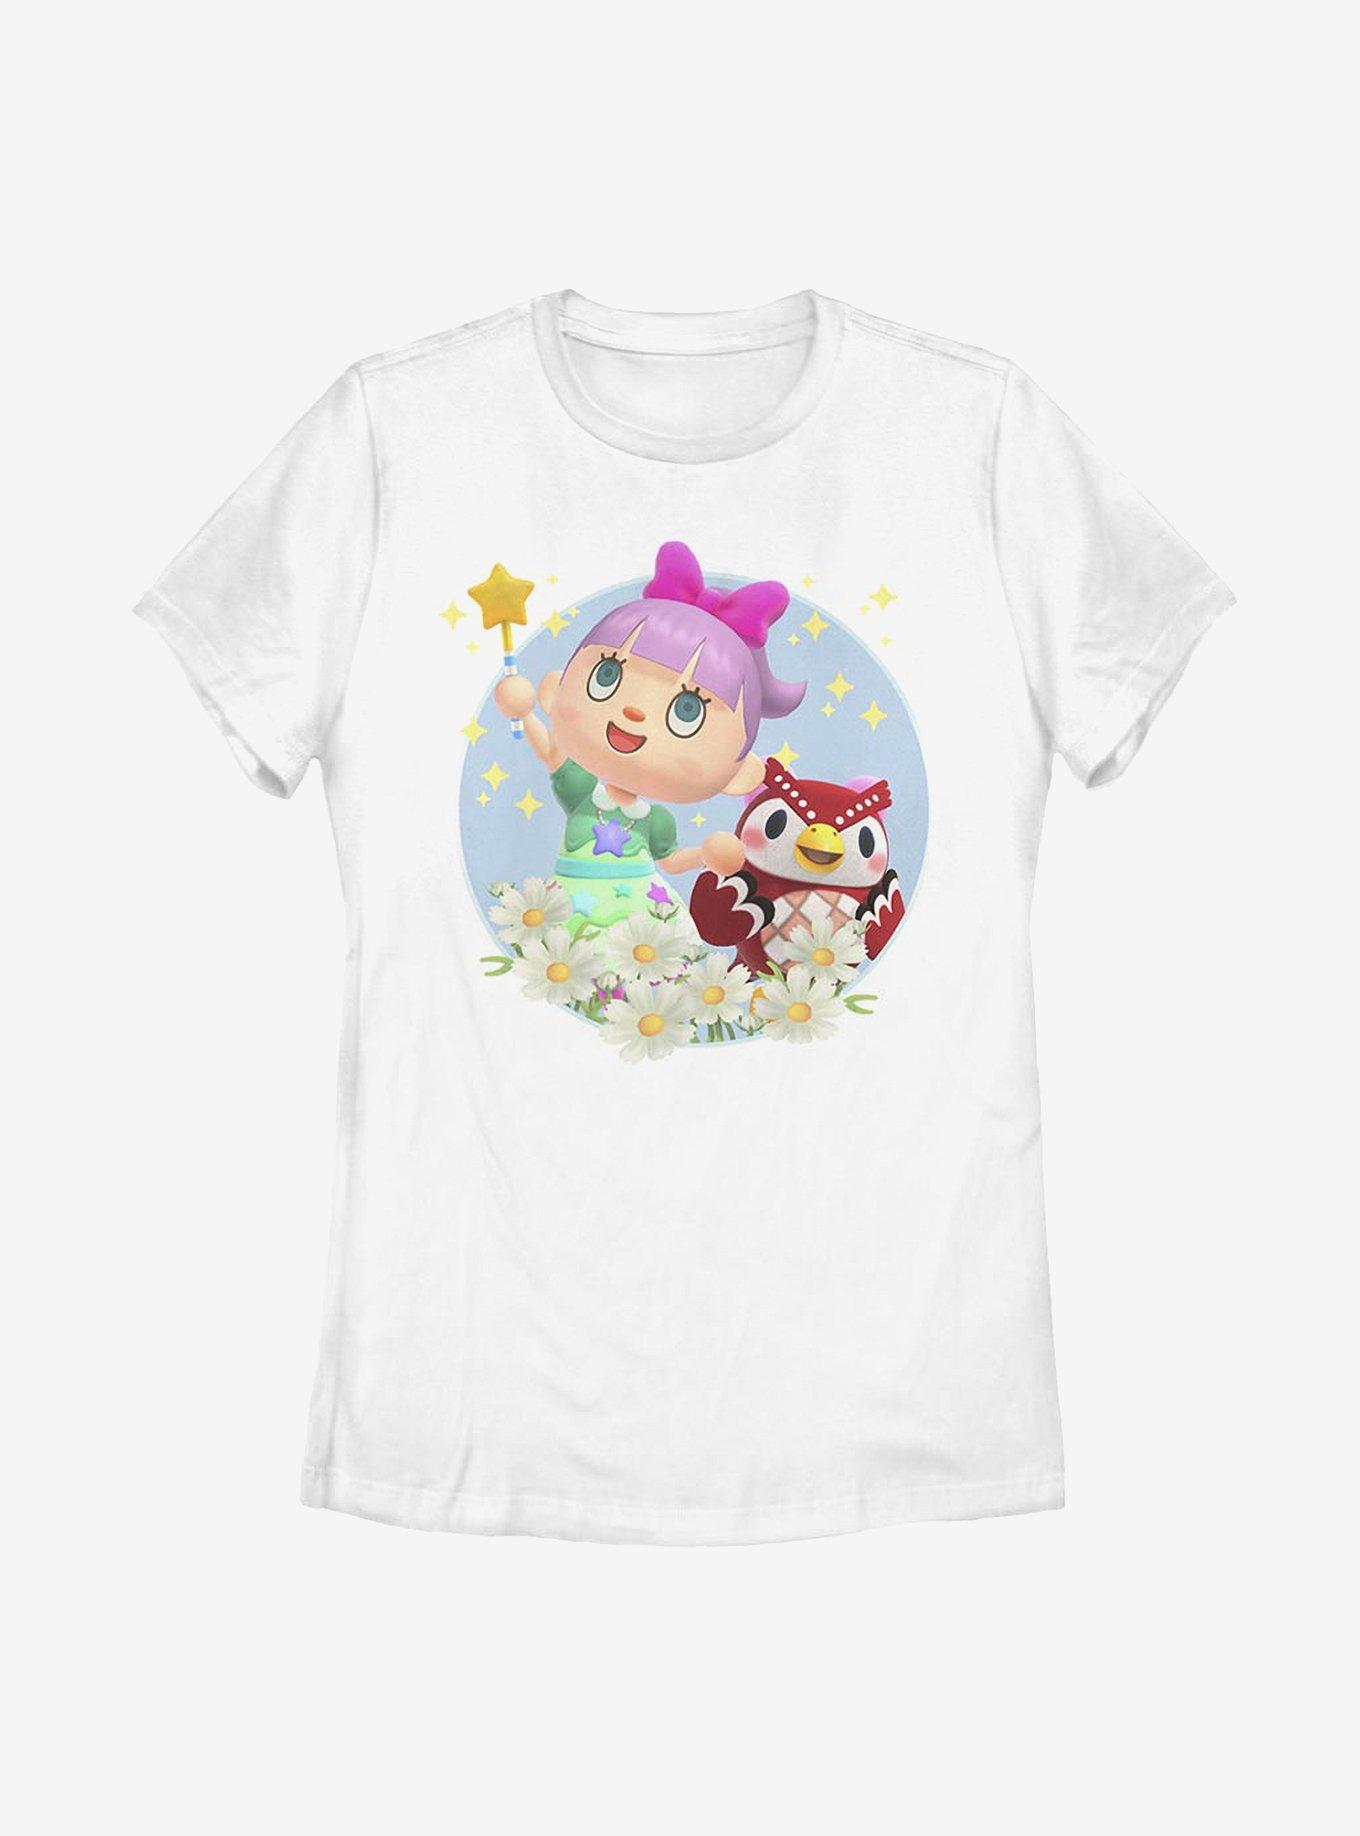 Animal Crossing: New Horizons Celeste Flowers Womens T-Shirt